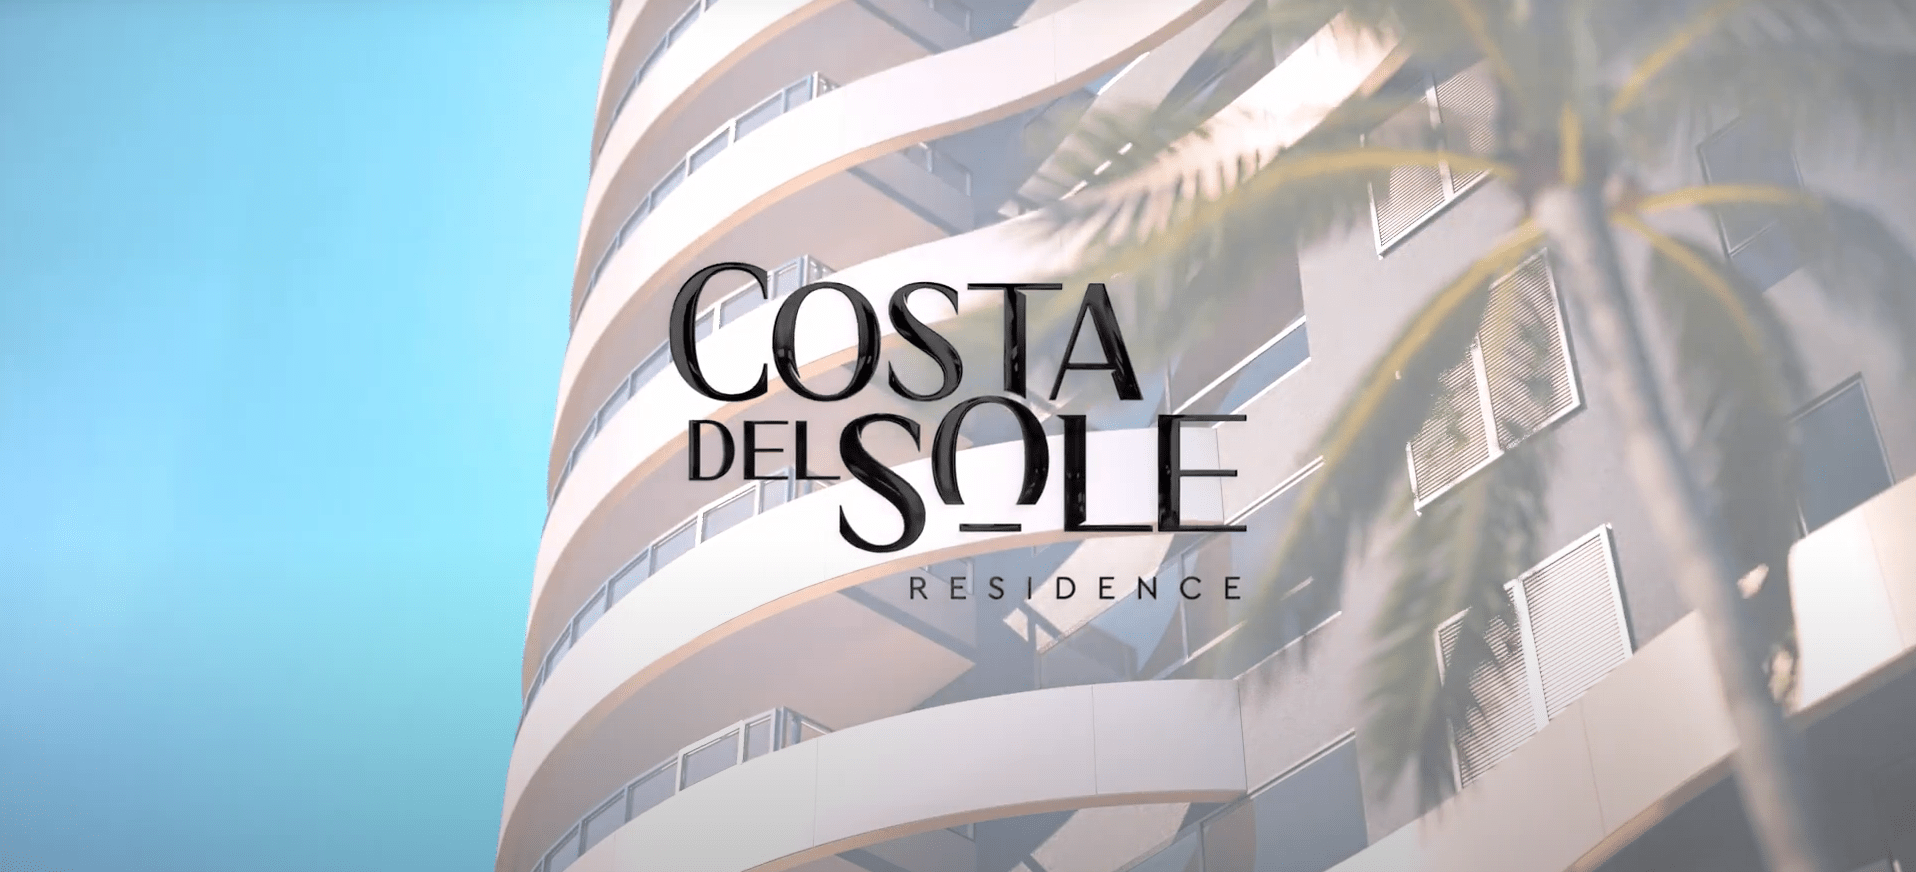 Video - Costa Del Sole